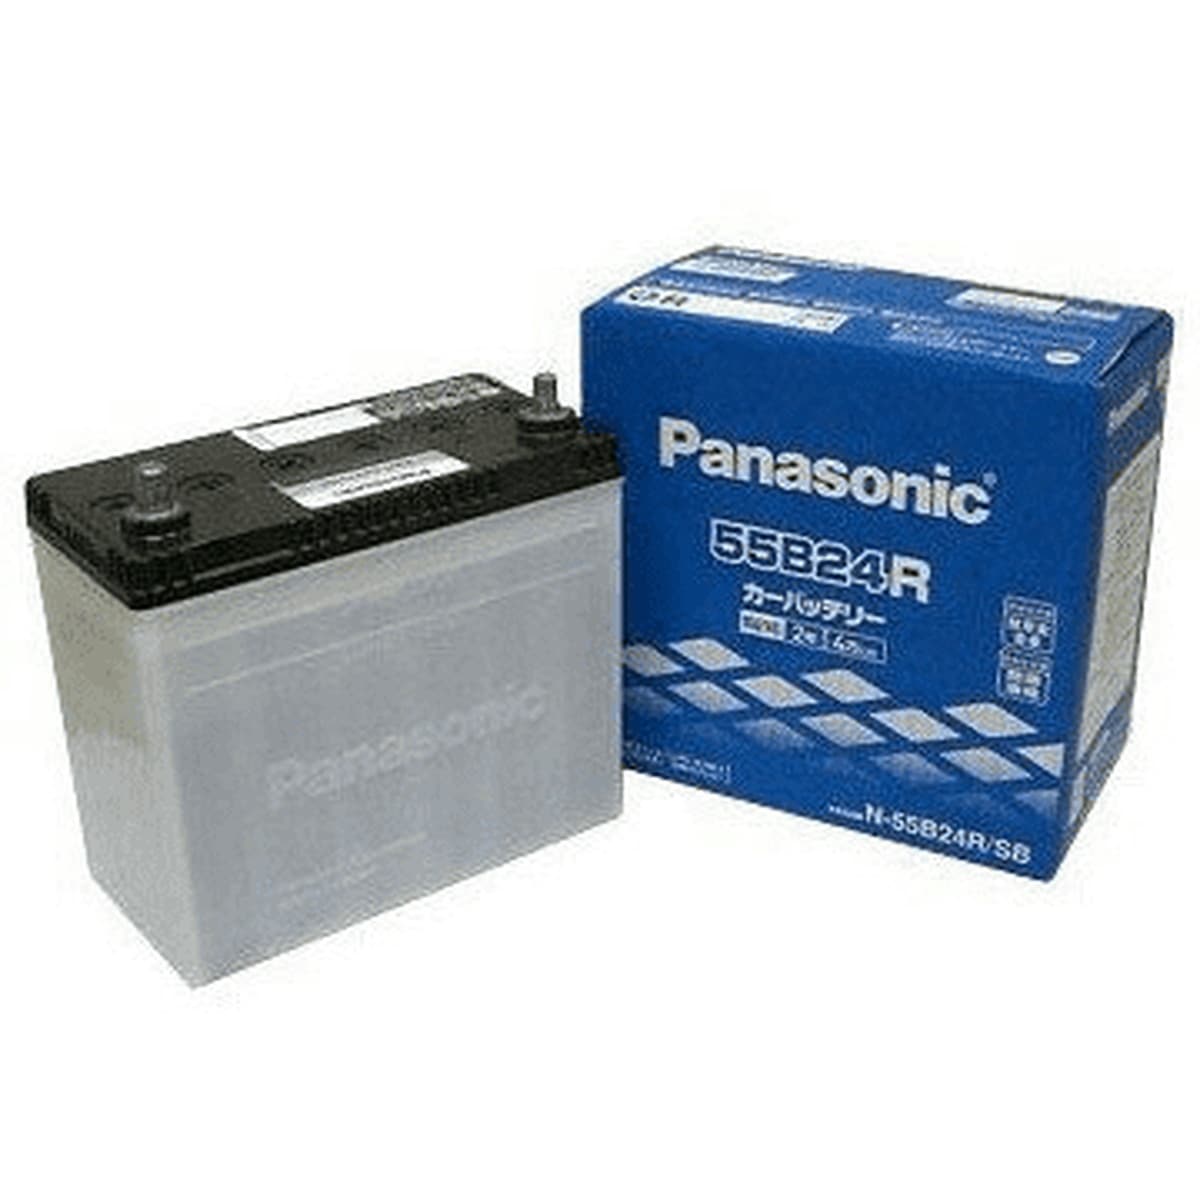 Panasonic N-60B19L/C8 スズキ エブリイワゴン 搭載(38B20L) PANASONIC カオス ブルーバッテリー 安心サポート付 送料無料